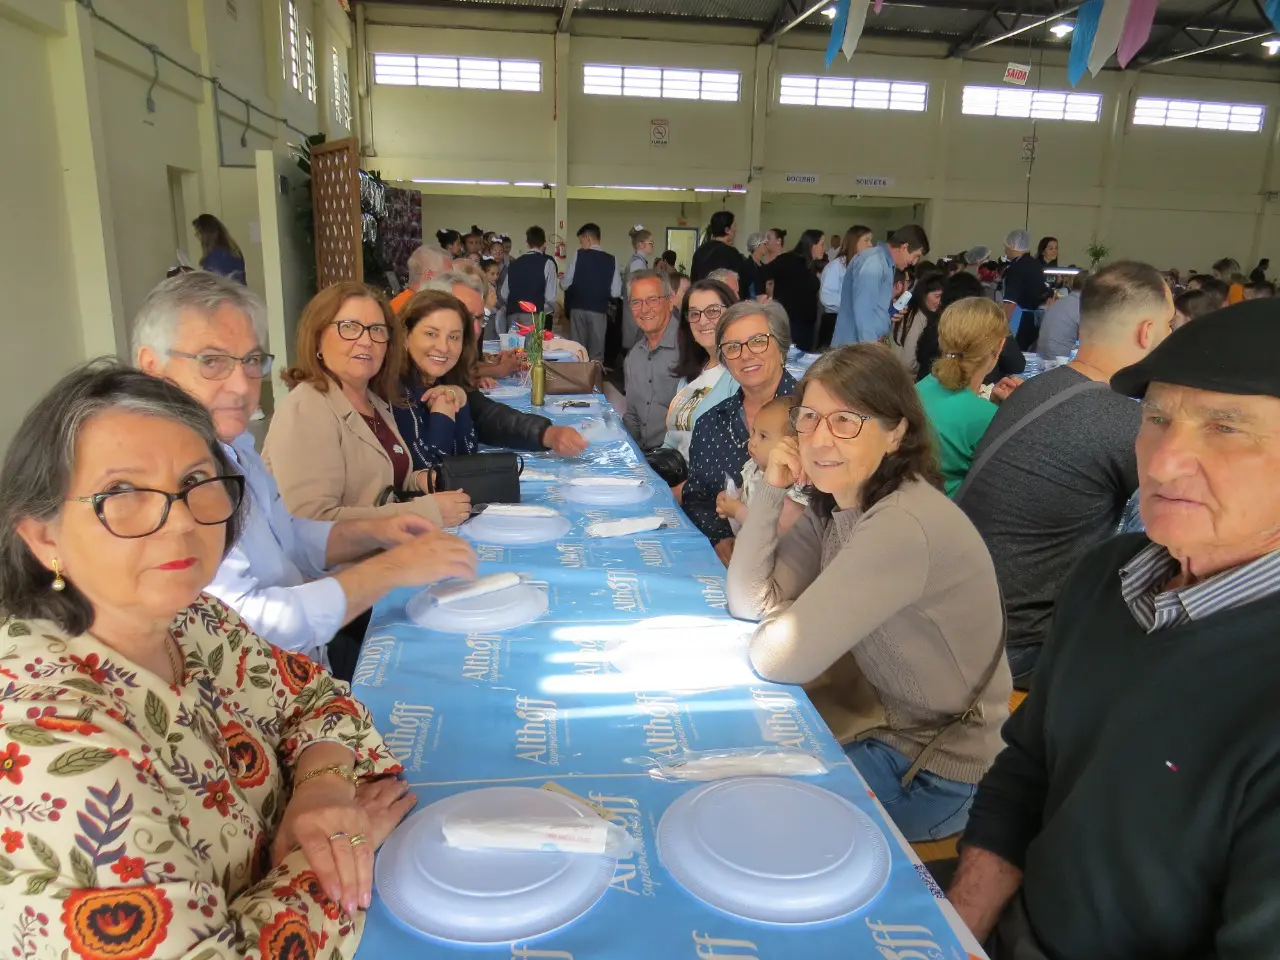 Almoço do Coral Pequenos Peregrinos reúne mais de 900 pessoas